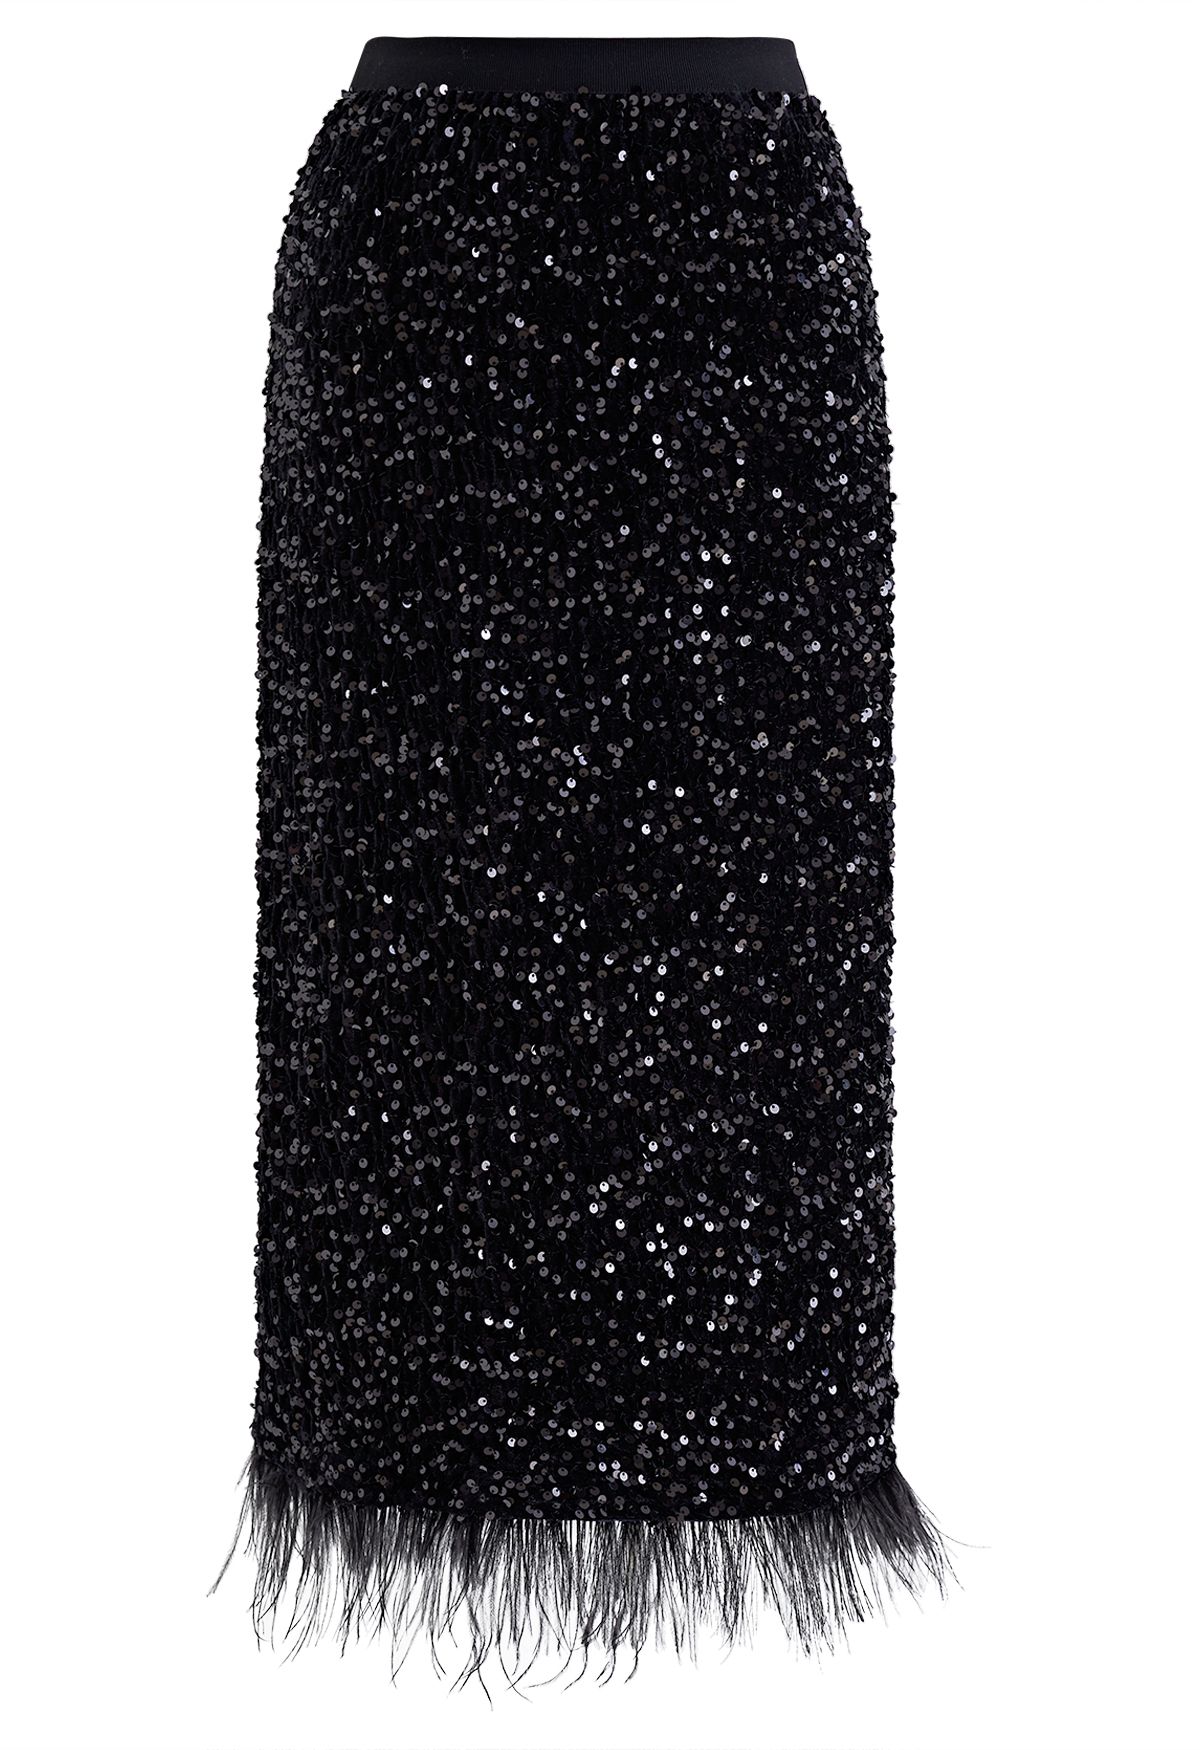 تنورة قلم رصاص مخملية مطرزة بالريش باللون الأسود